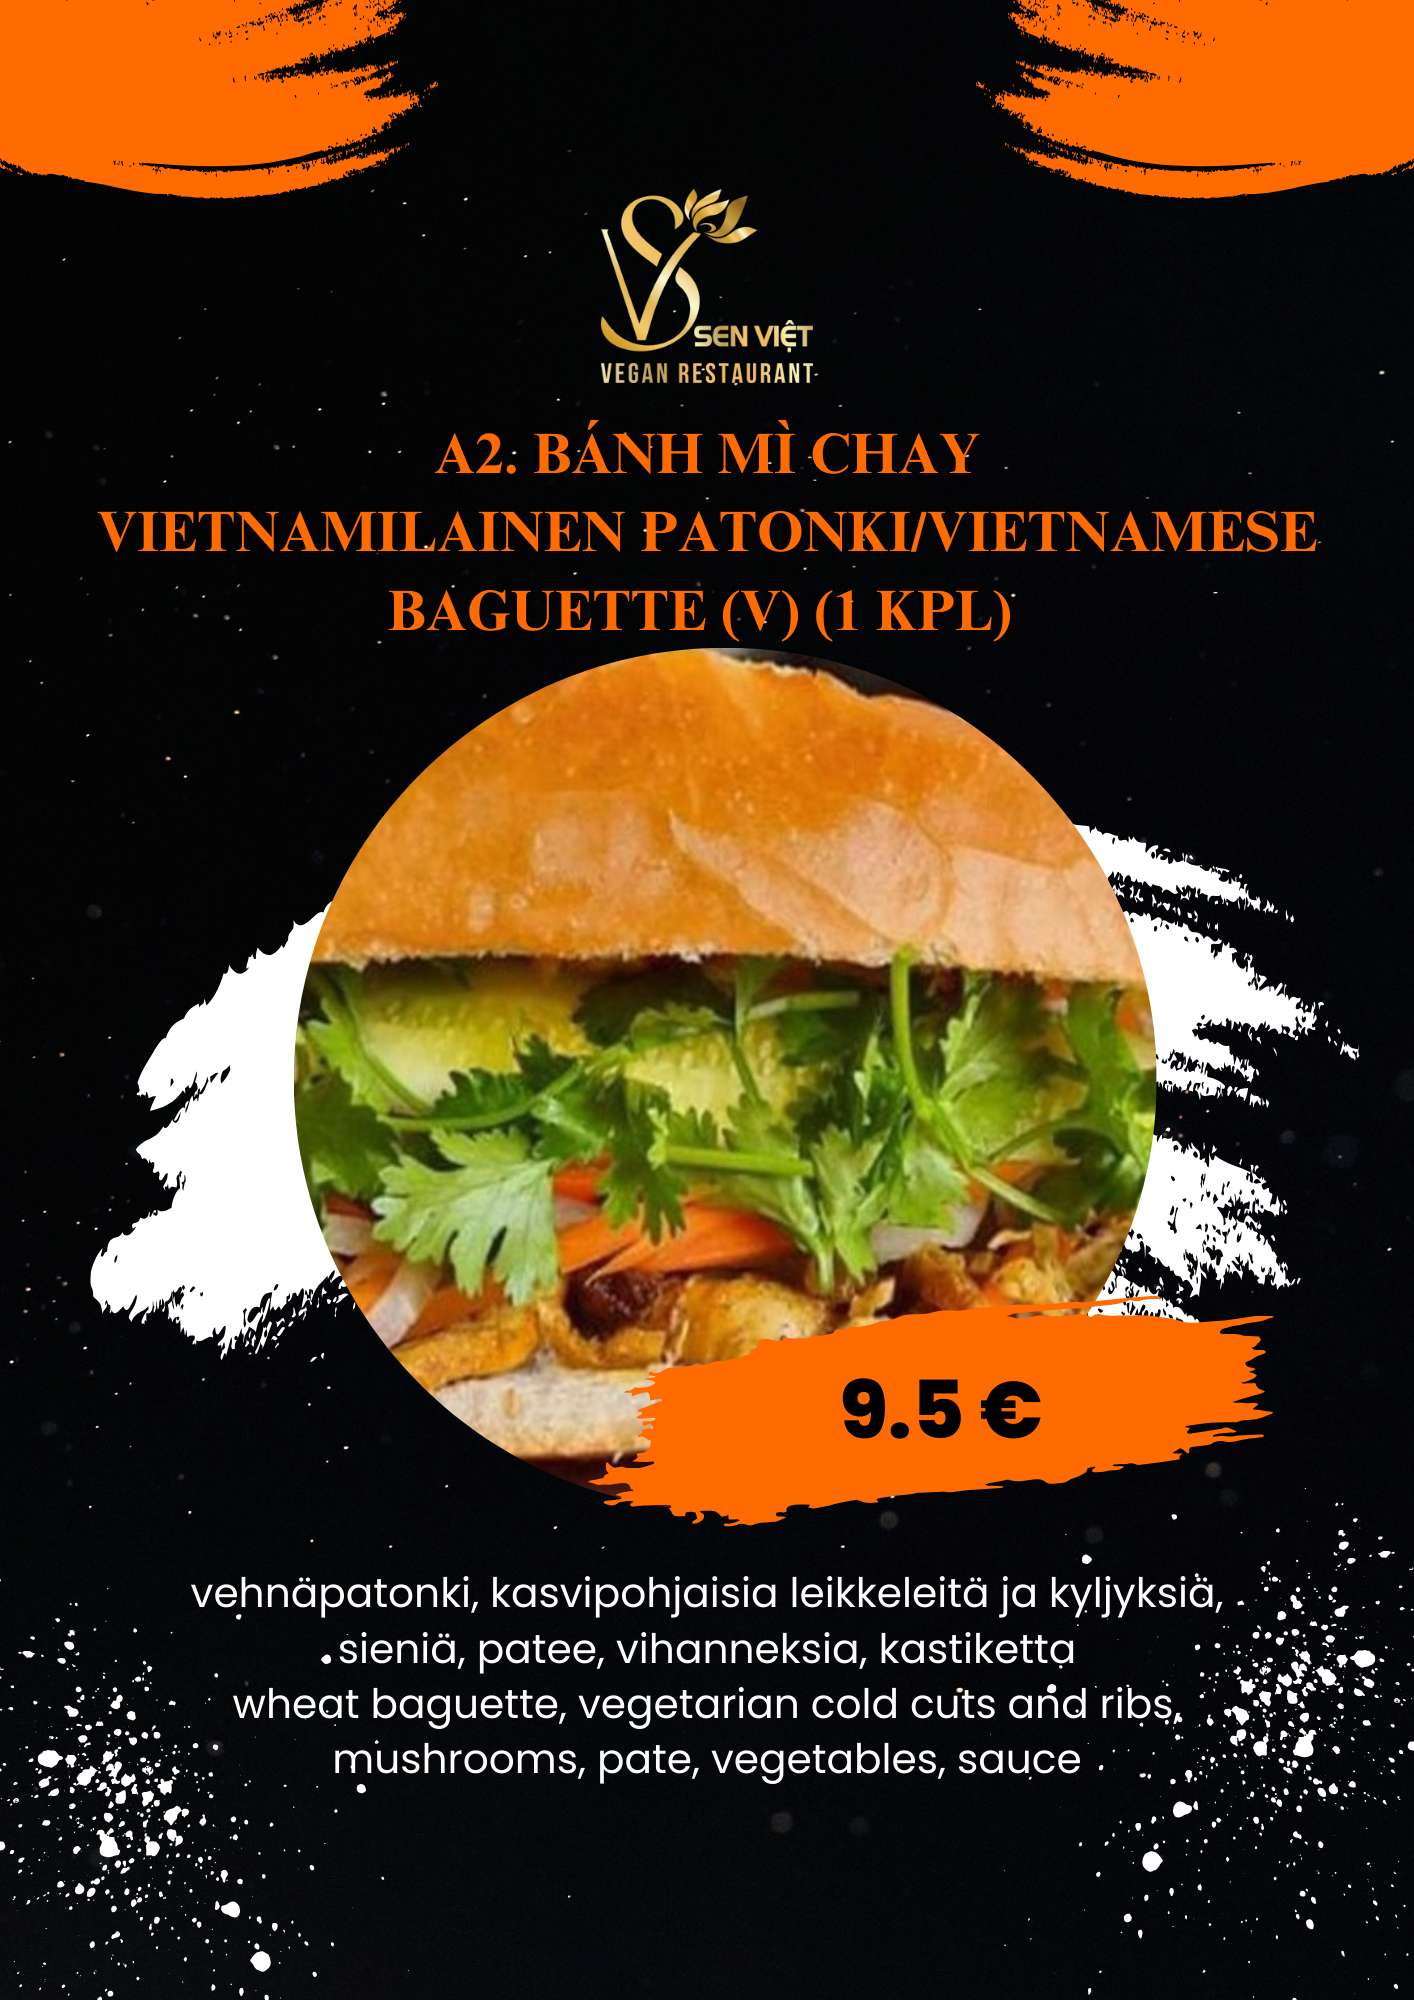 A2. Bánh Mì Chay (V) (1 kpl)